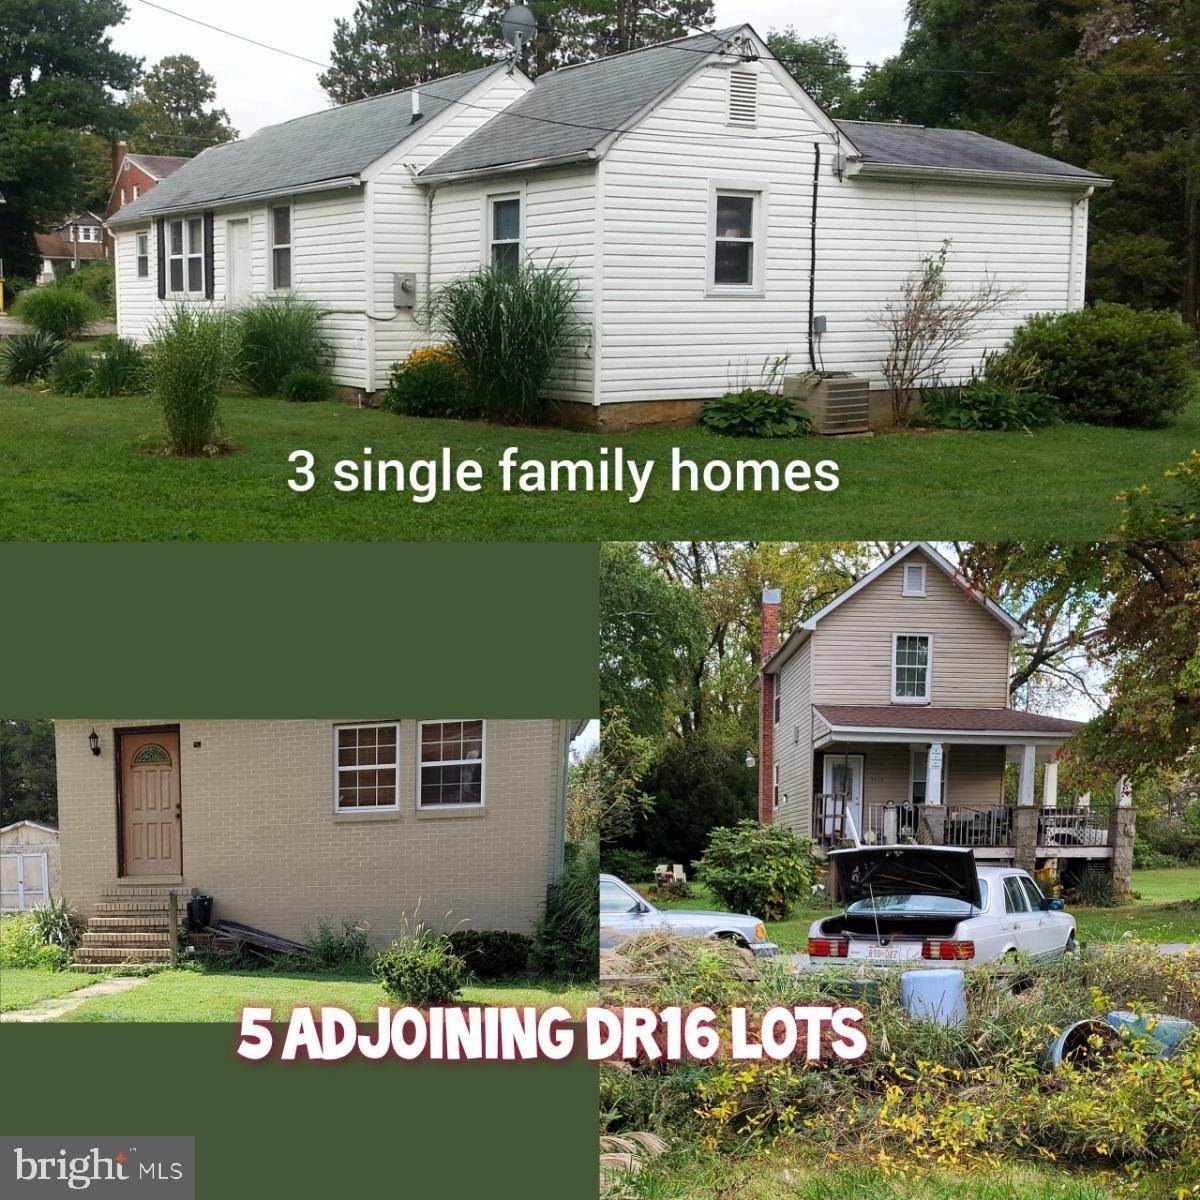 Single Family Homes для того Продажа на Windsor Mill, Мэриленд 21244 Соединенные Штаты